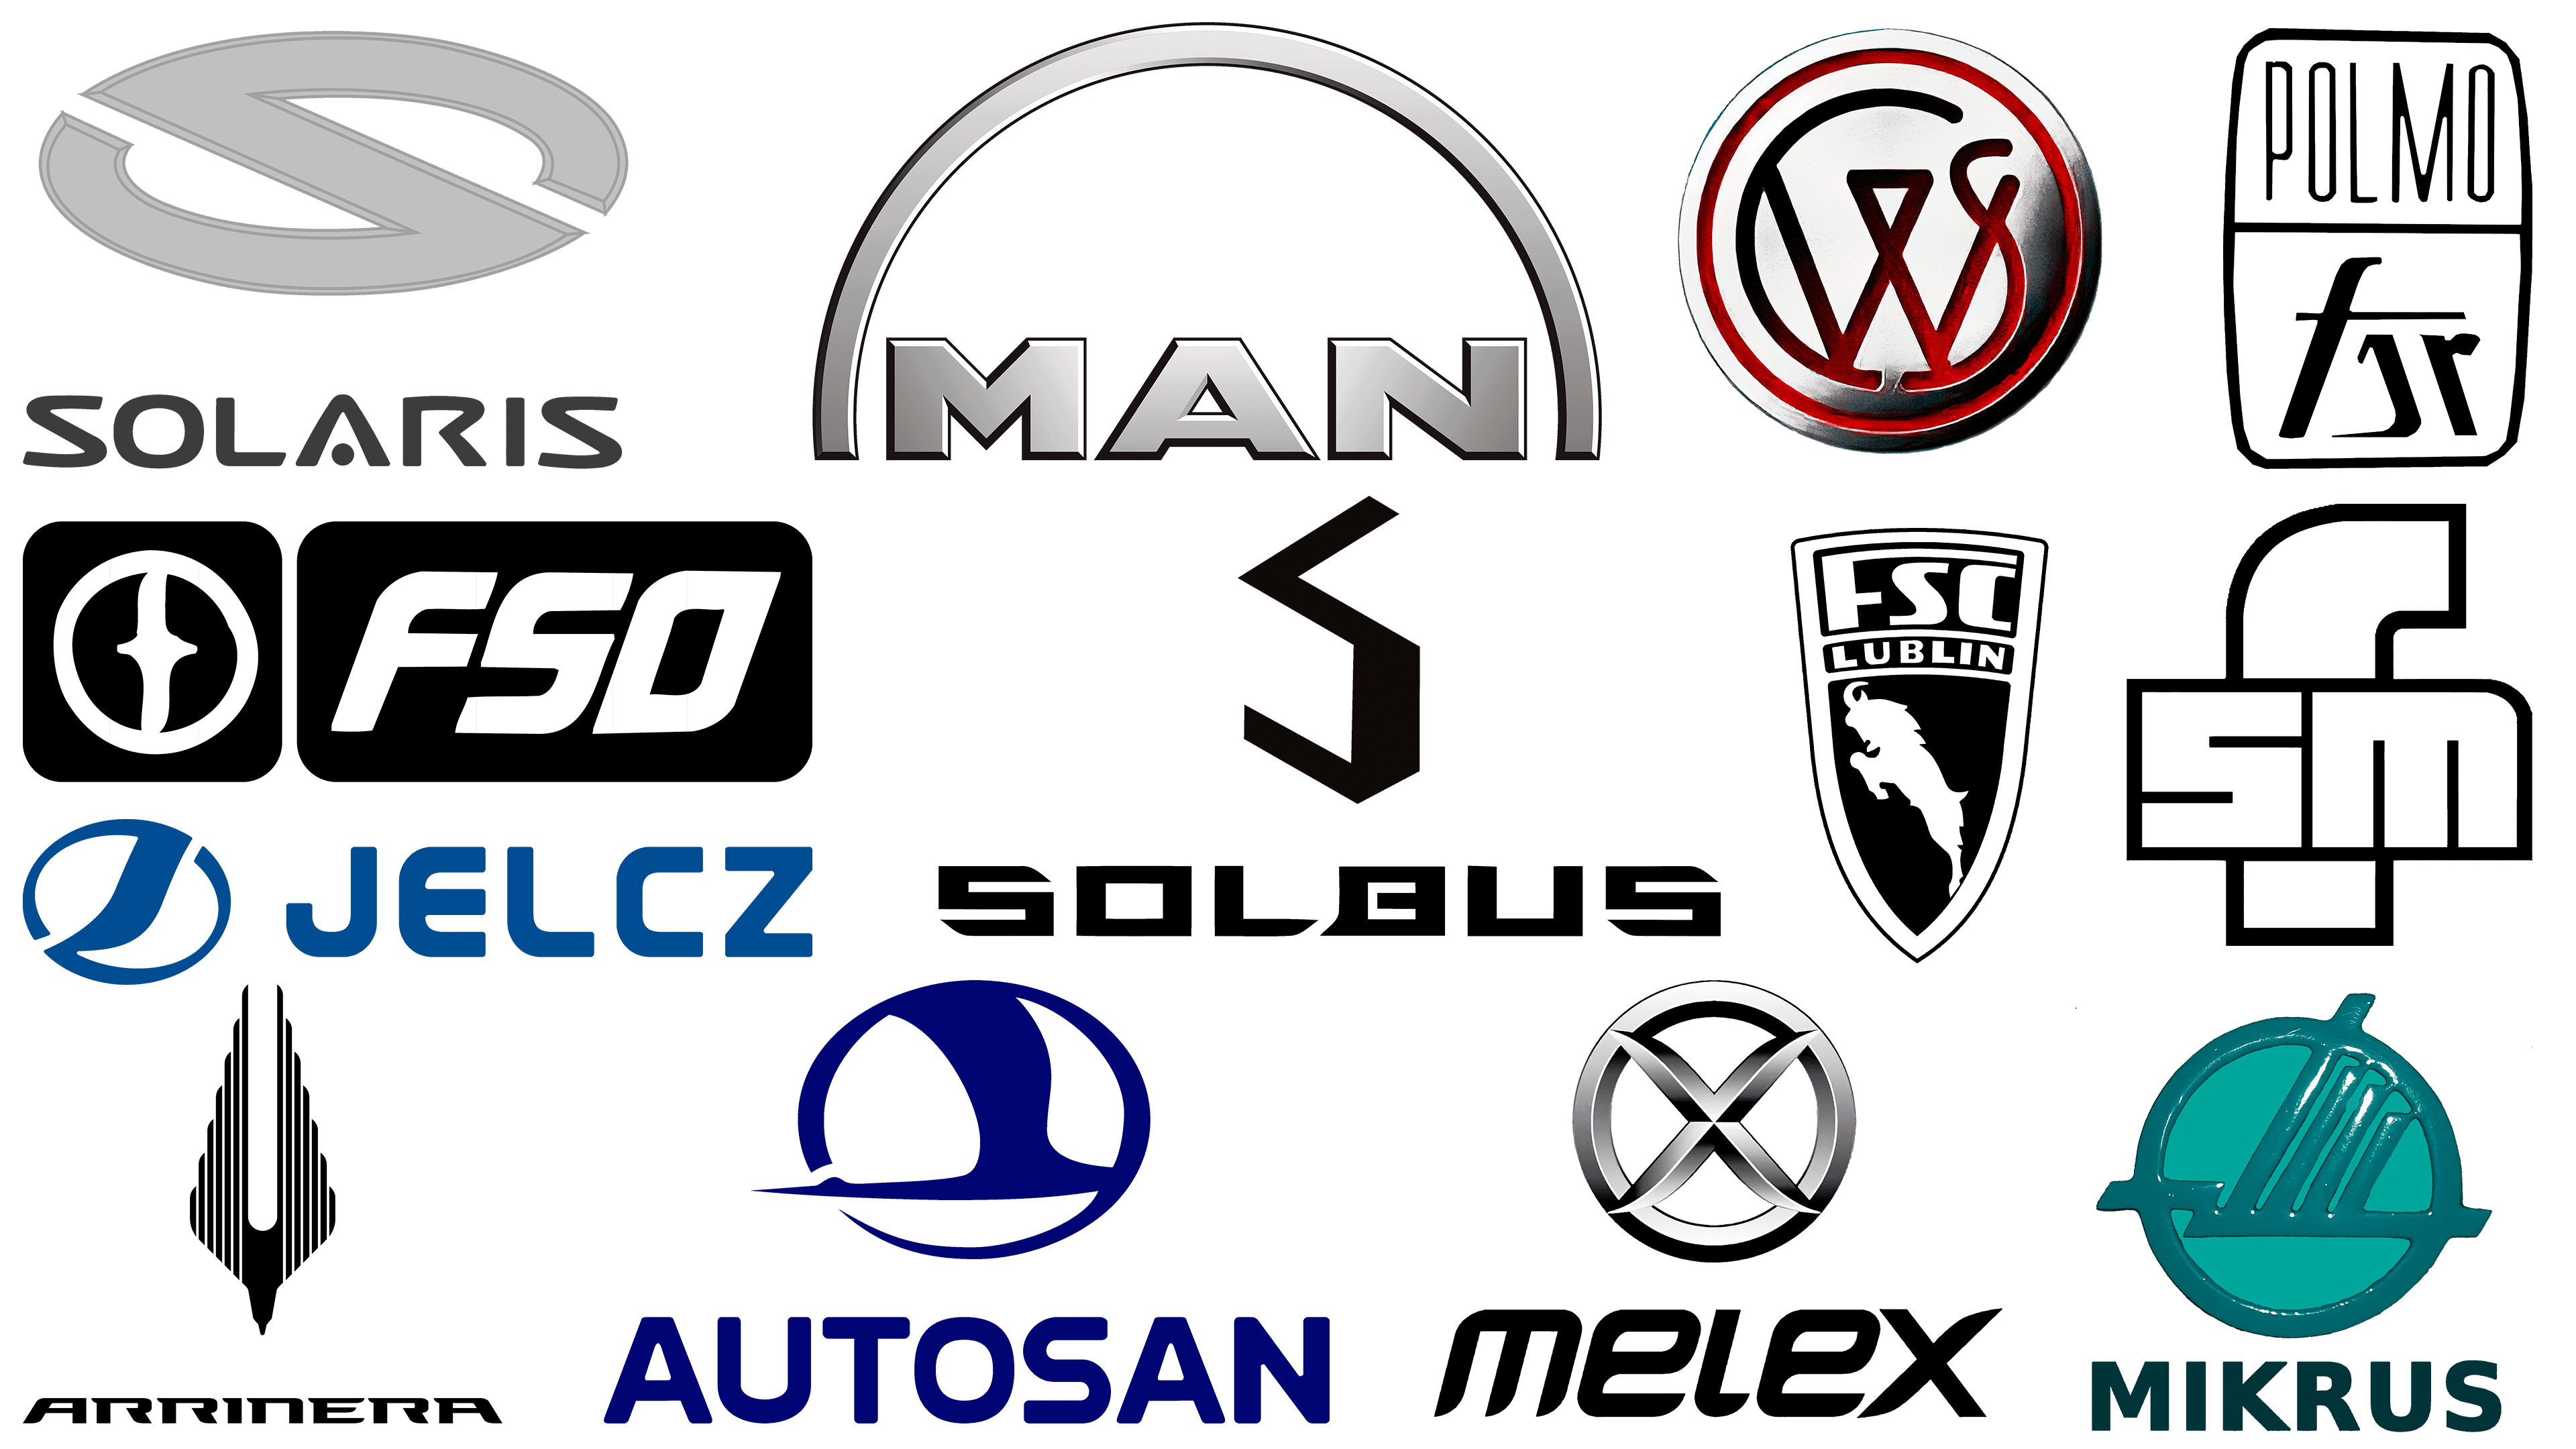 Polish Car Brands,